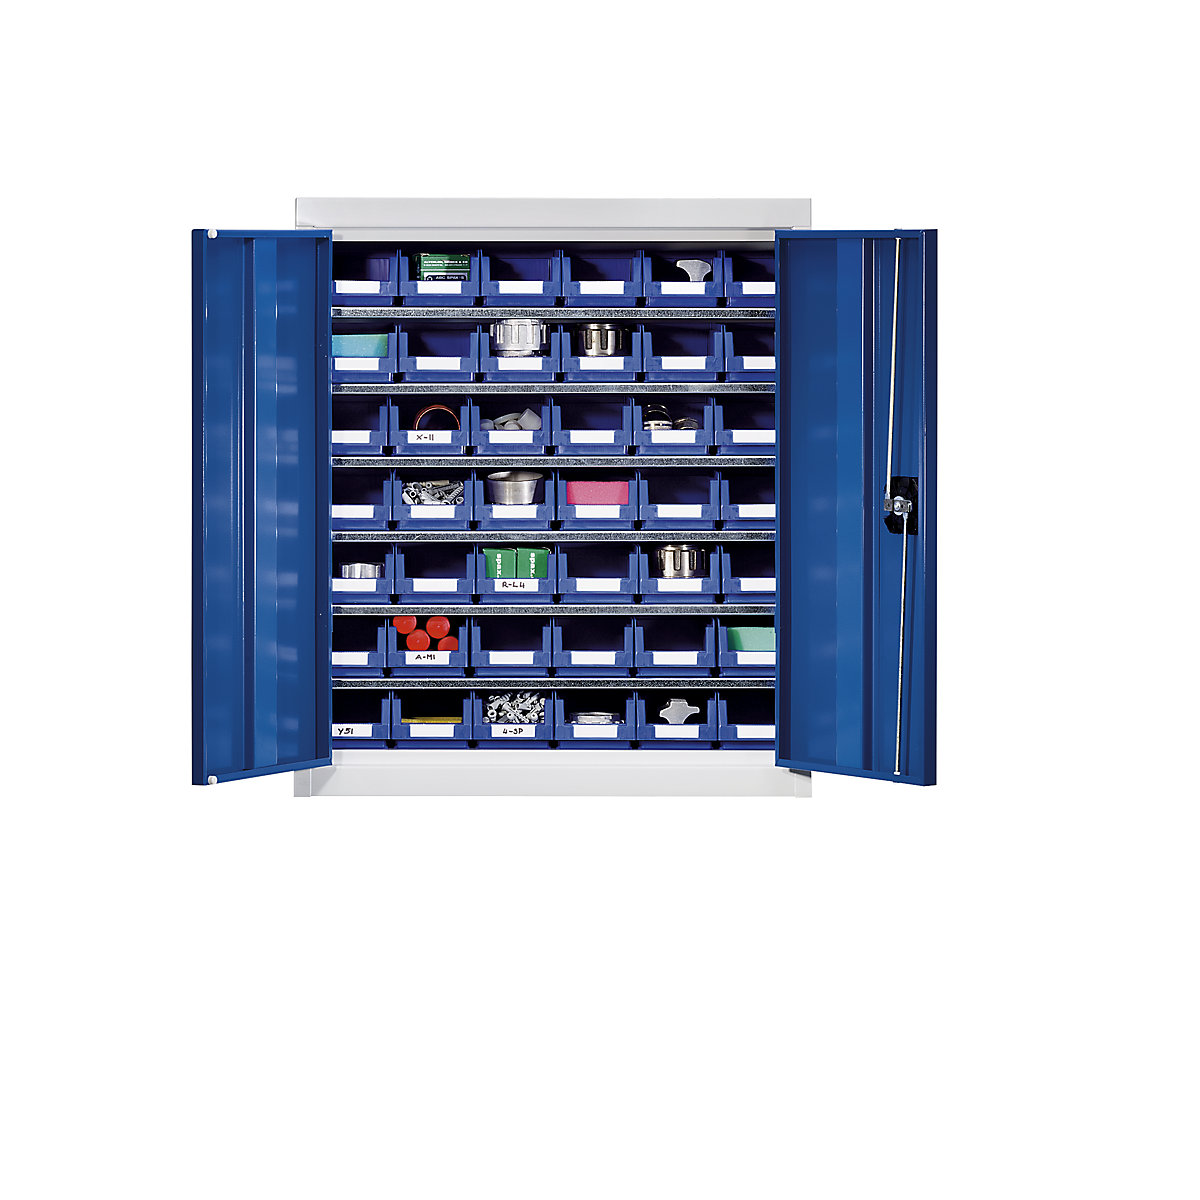 Omara za material s skladiščnimi posodami – eurokraft pro, višina 780 mm, 6 polic, svetlo siva / encijan modra-8